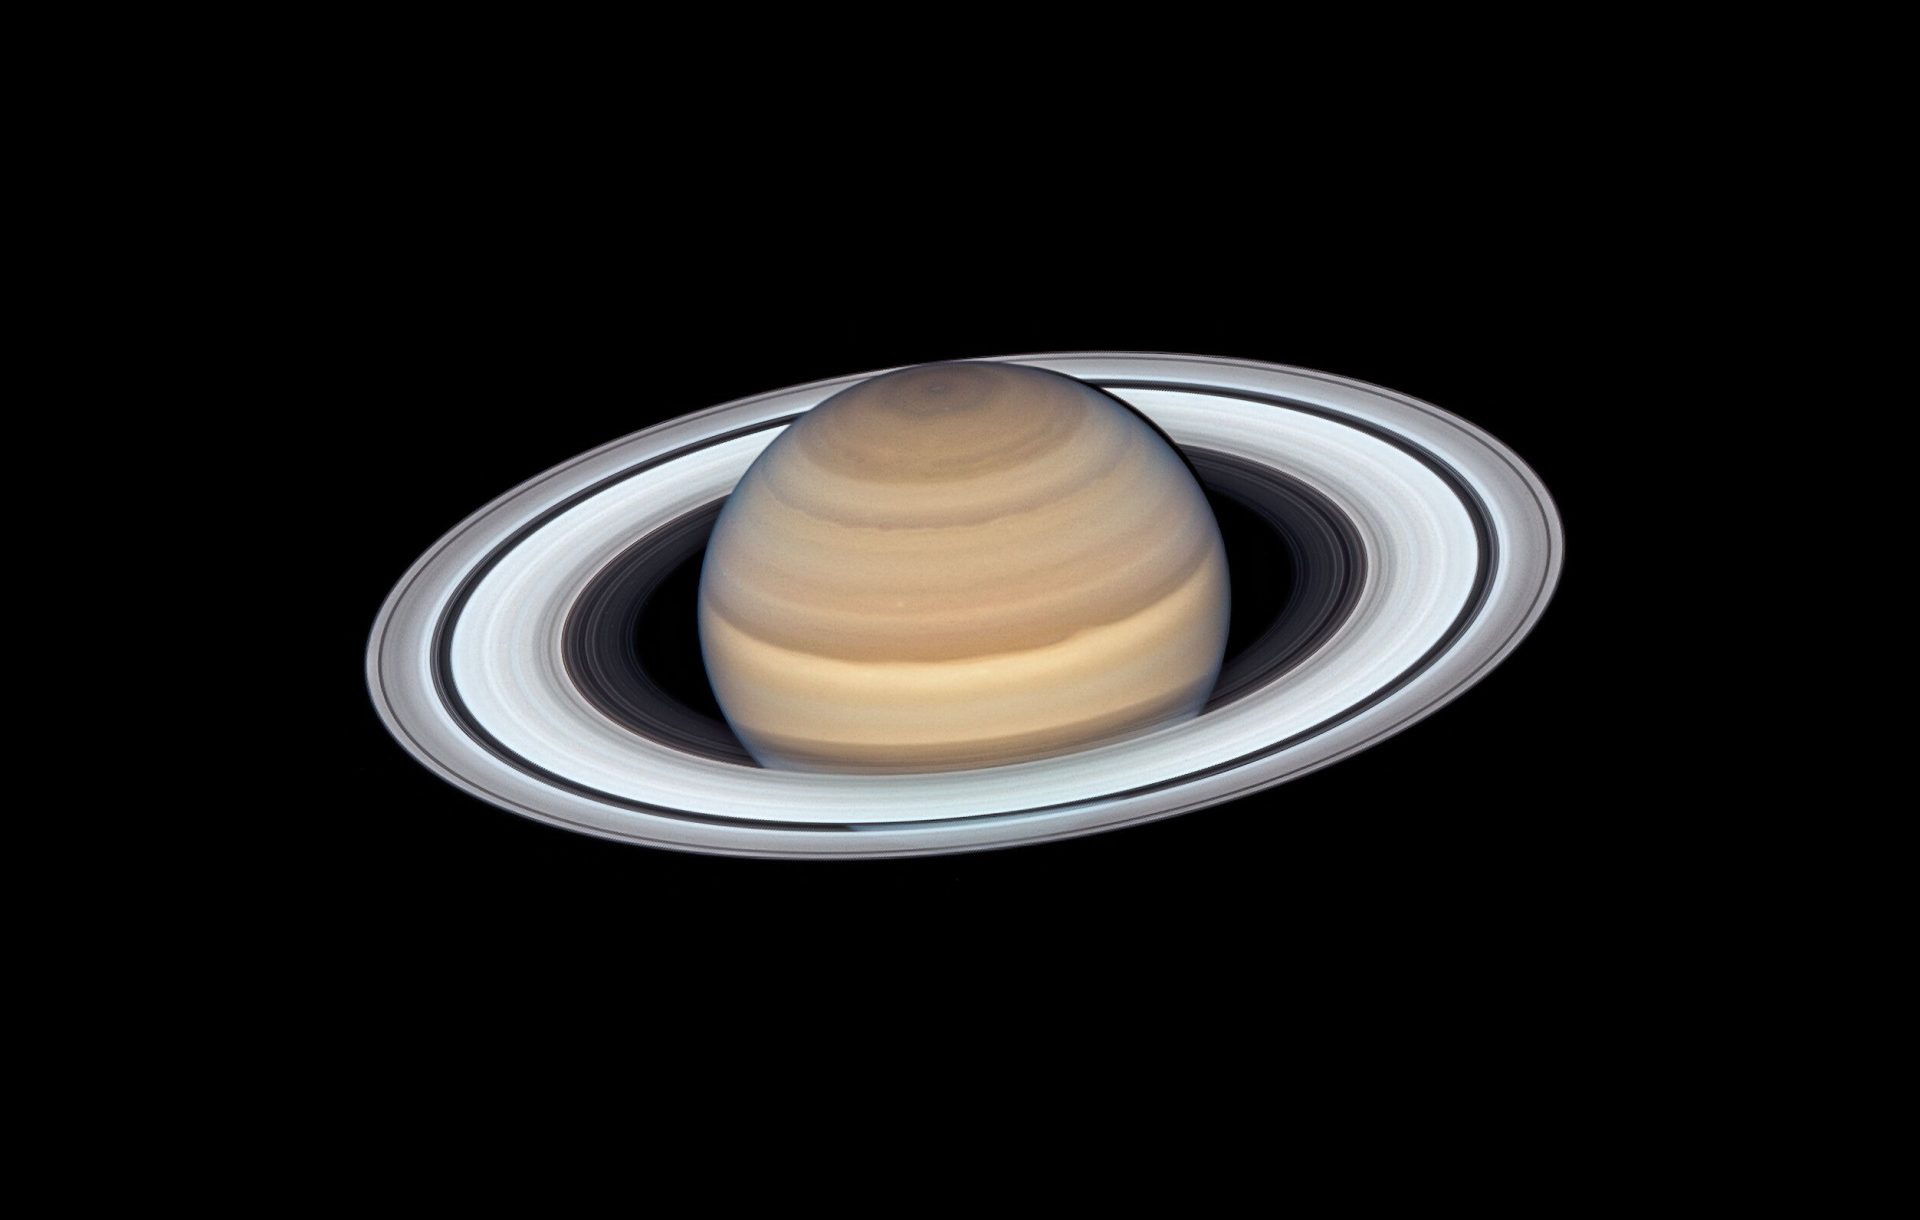 El último retrato de Saturno tomado por el telescopio Hubble